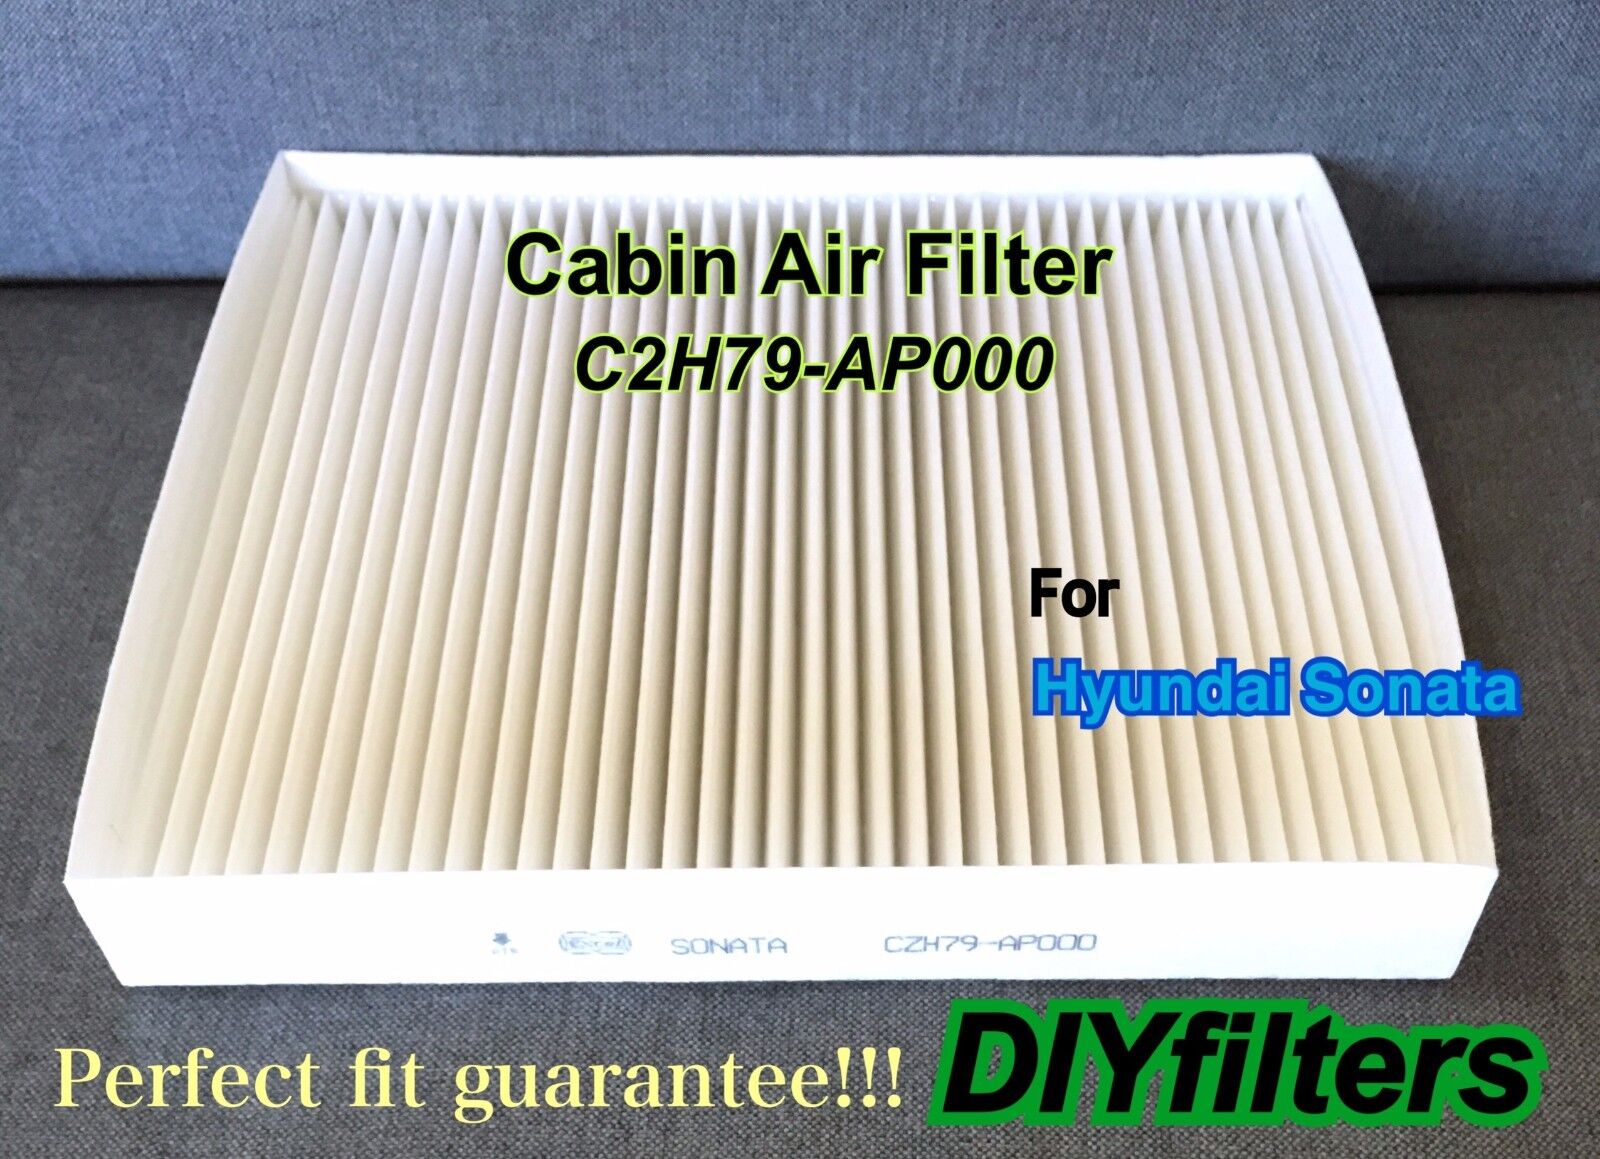 Cabin Air Filter For Newest Hyundai Sonata 2015-2019 CZH79-AP000